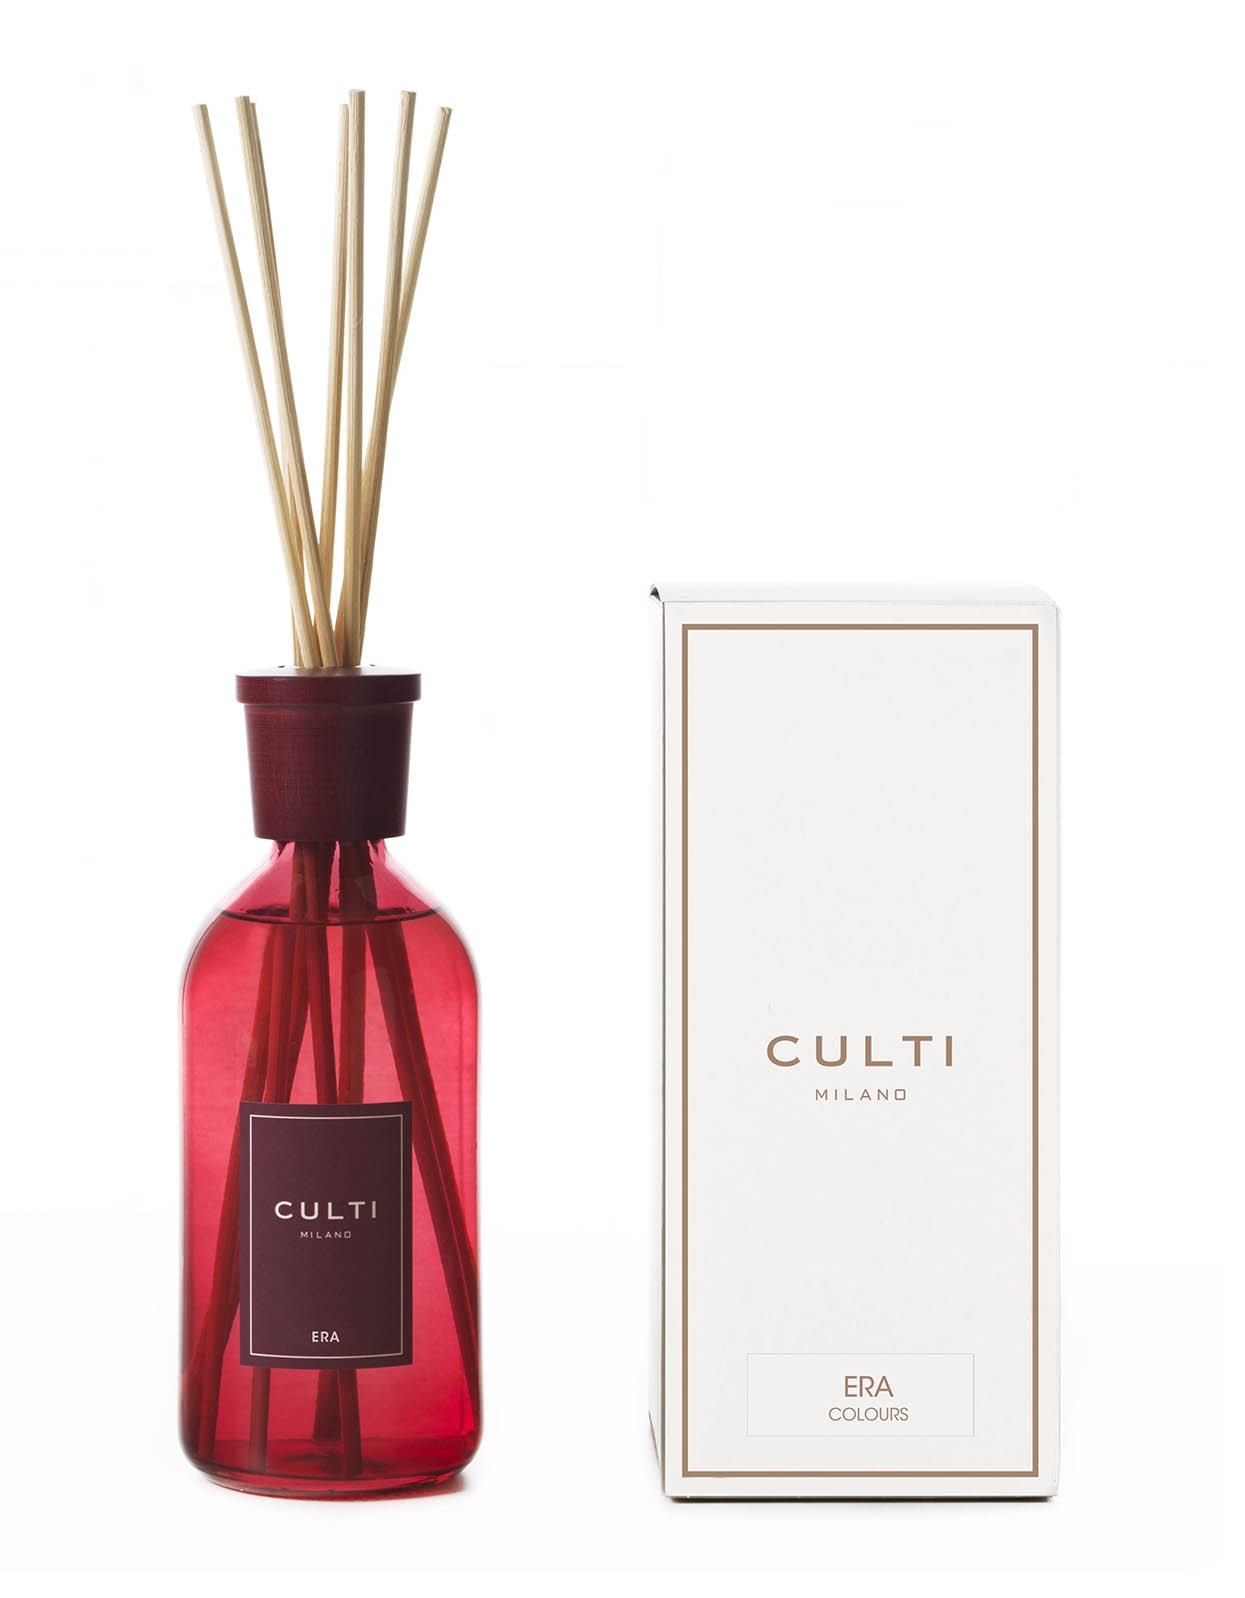 https://avvenice.com/78612/culti-milano-diffusore-color-500-ml-era-profumi-d-ambiente-rosso-fragranze-luxury.jpg